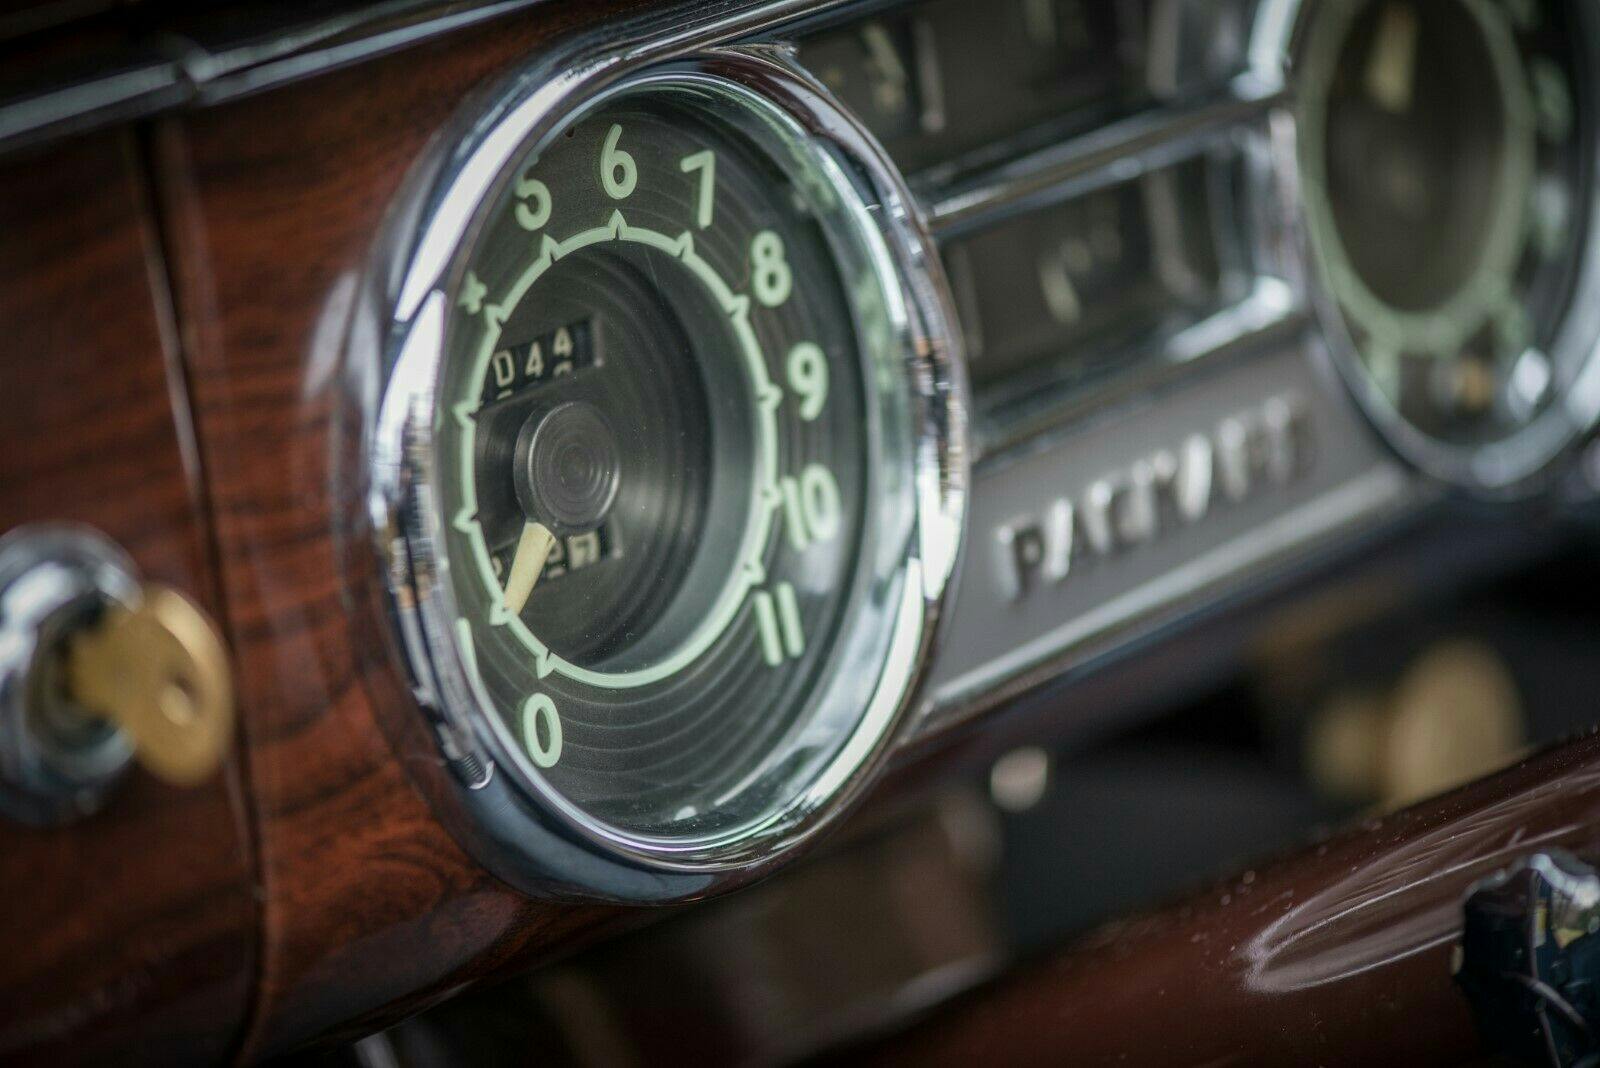 1949 Packard Deluxe Club Sedan - Close-up speedometer